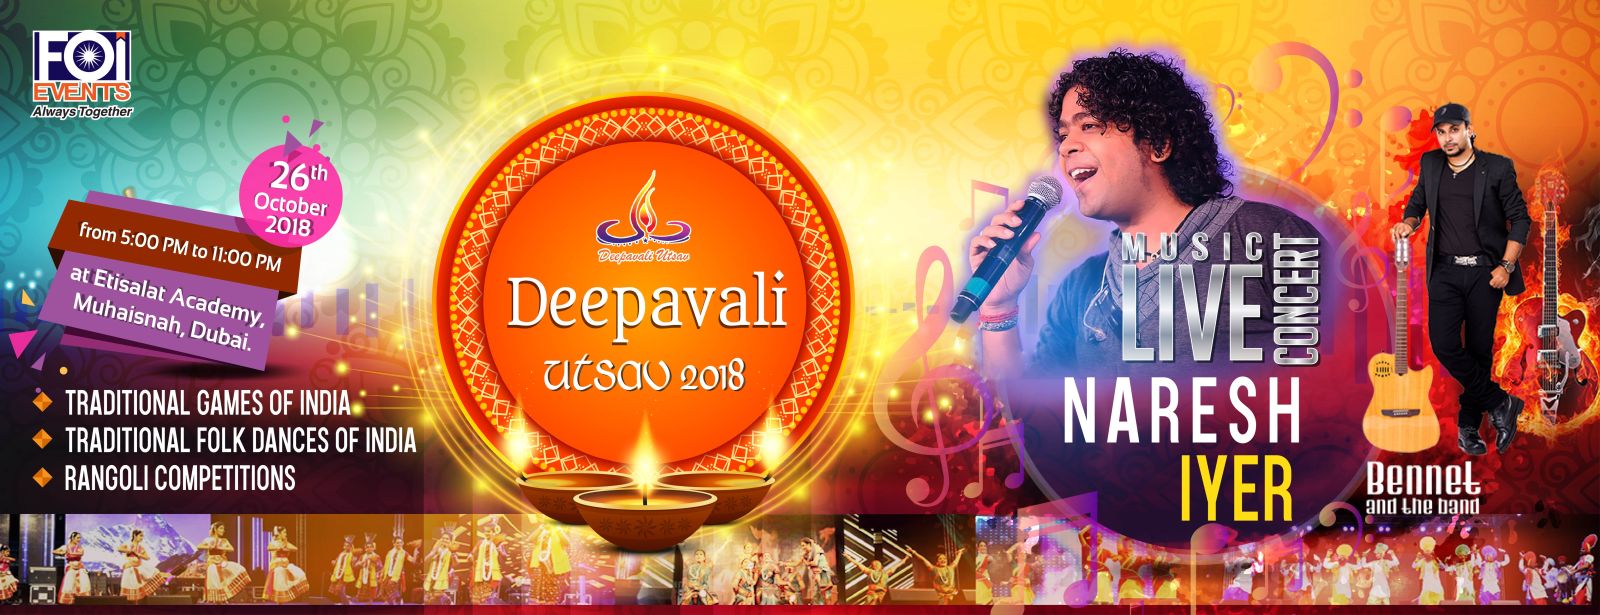 Deepavali Utsav 2018 - Coming Soon in UAE